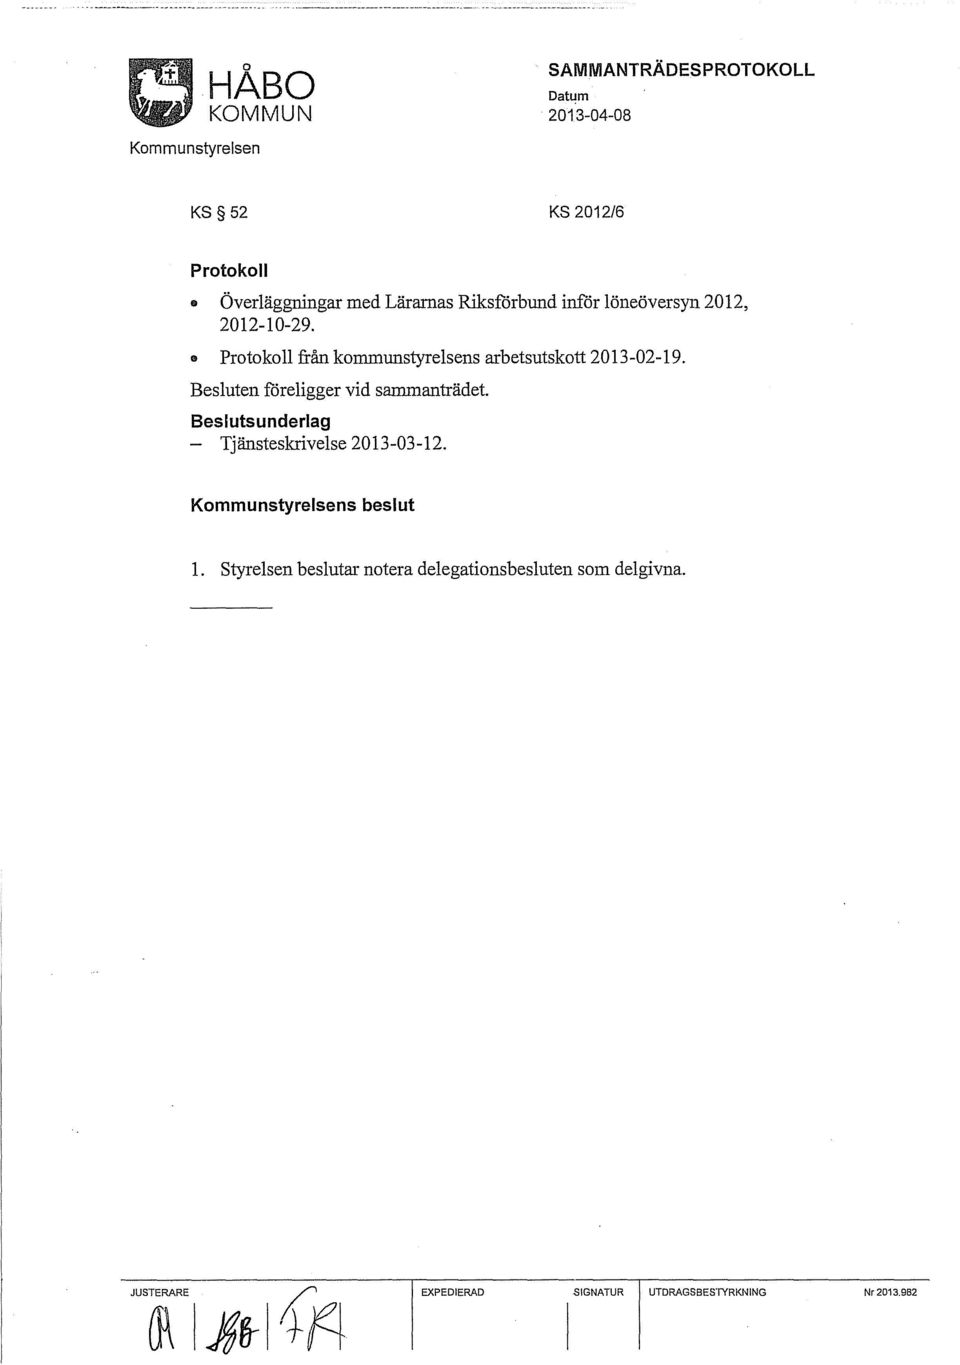 Protokoll från kommunstyrelsens arbetsutskott 2013-02-19. Besluten f6religger vid sammanträdet.